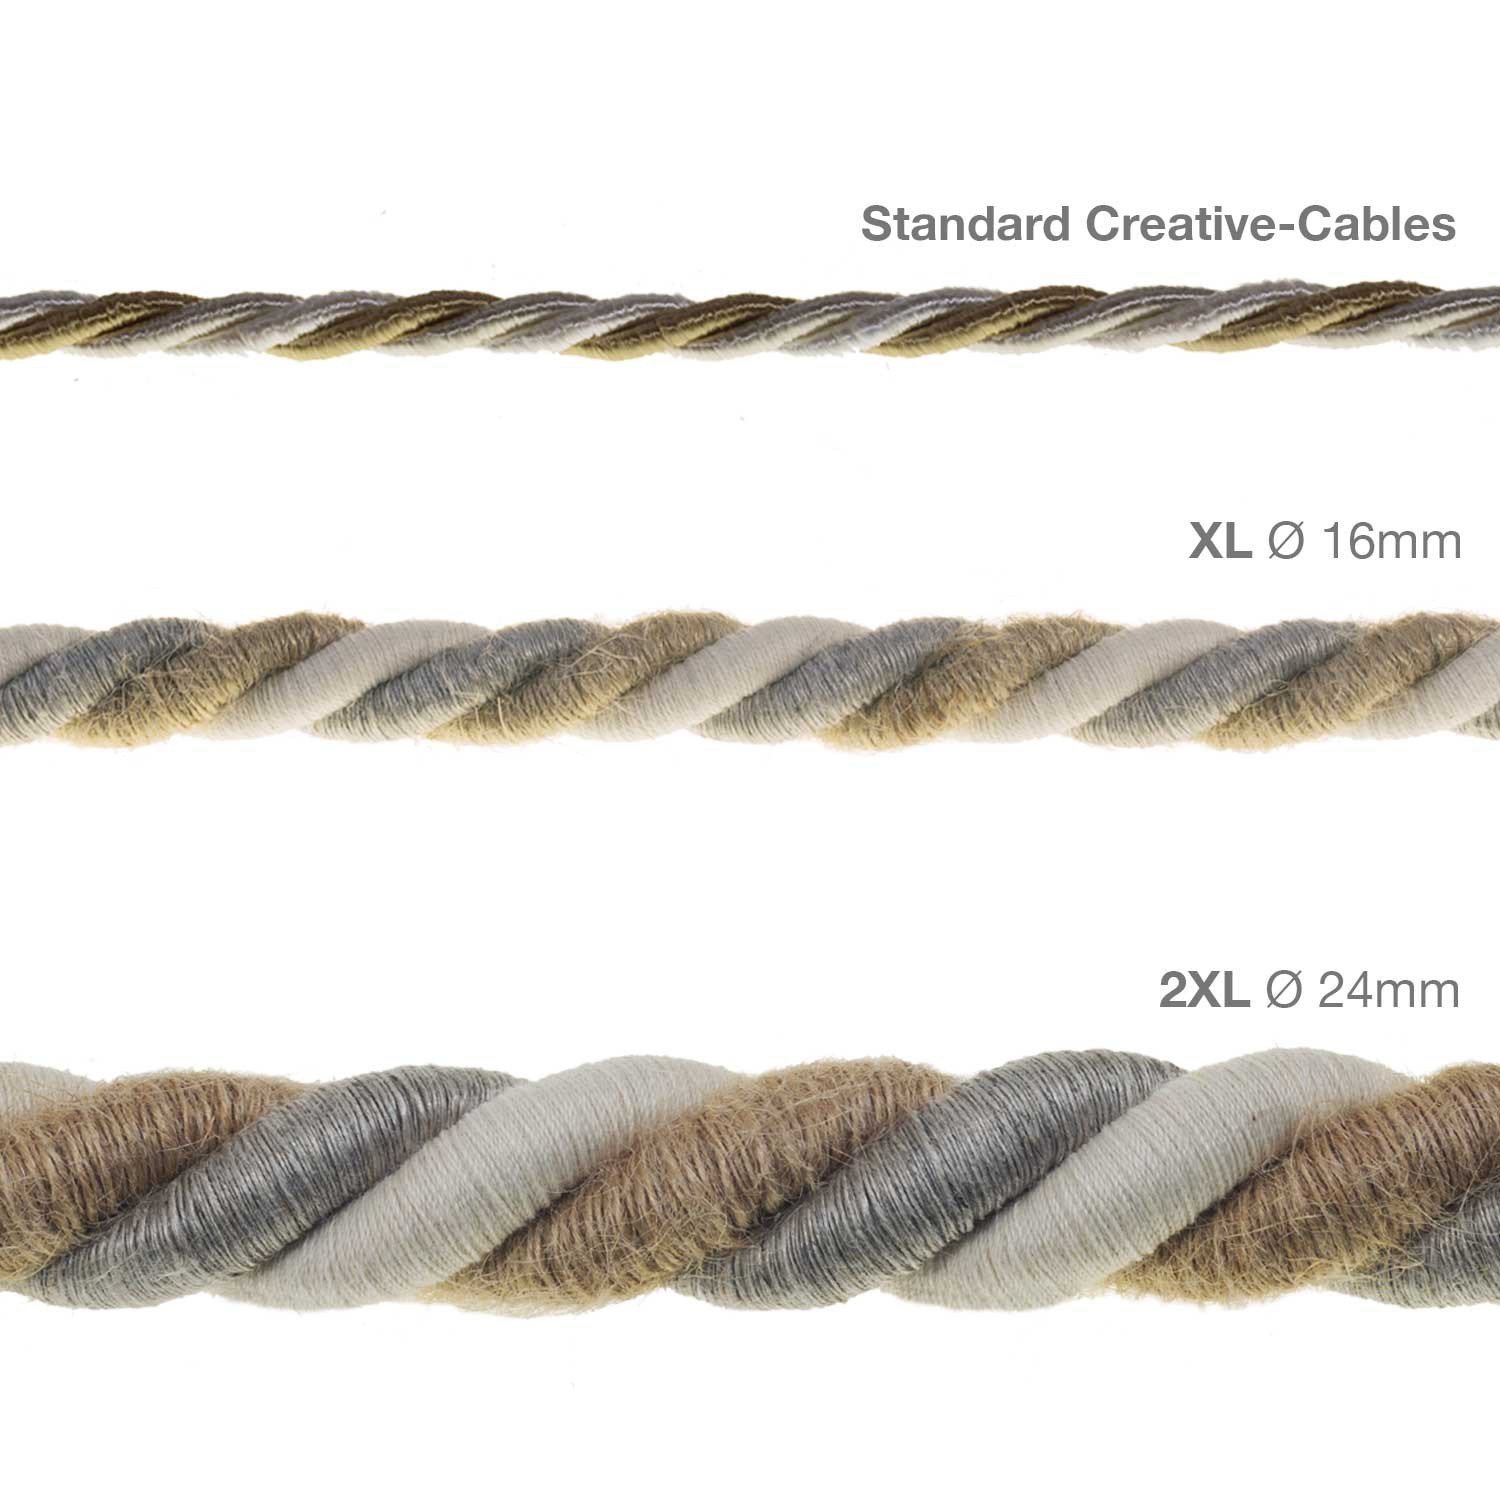 Cordón 2XL, cable eléctrico 3x0,75. Revestimiento de yute, algodón y lino Country. Diámetro: 24mm.